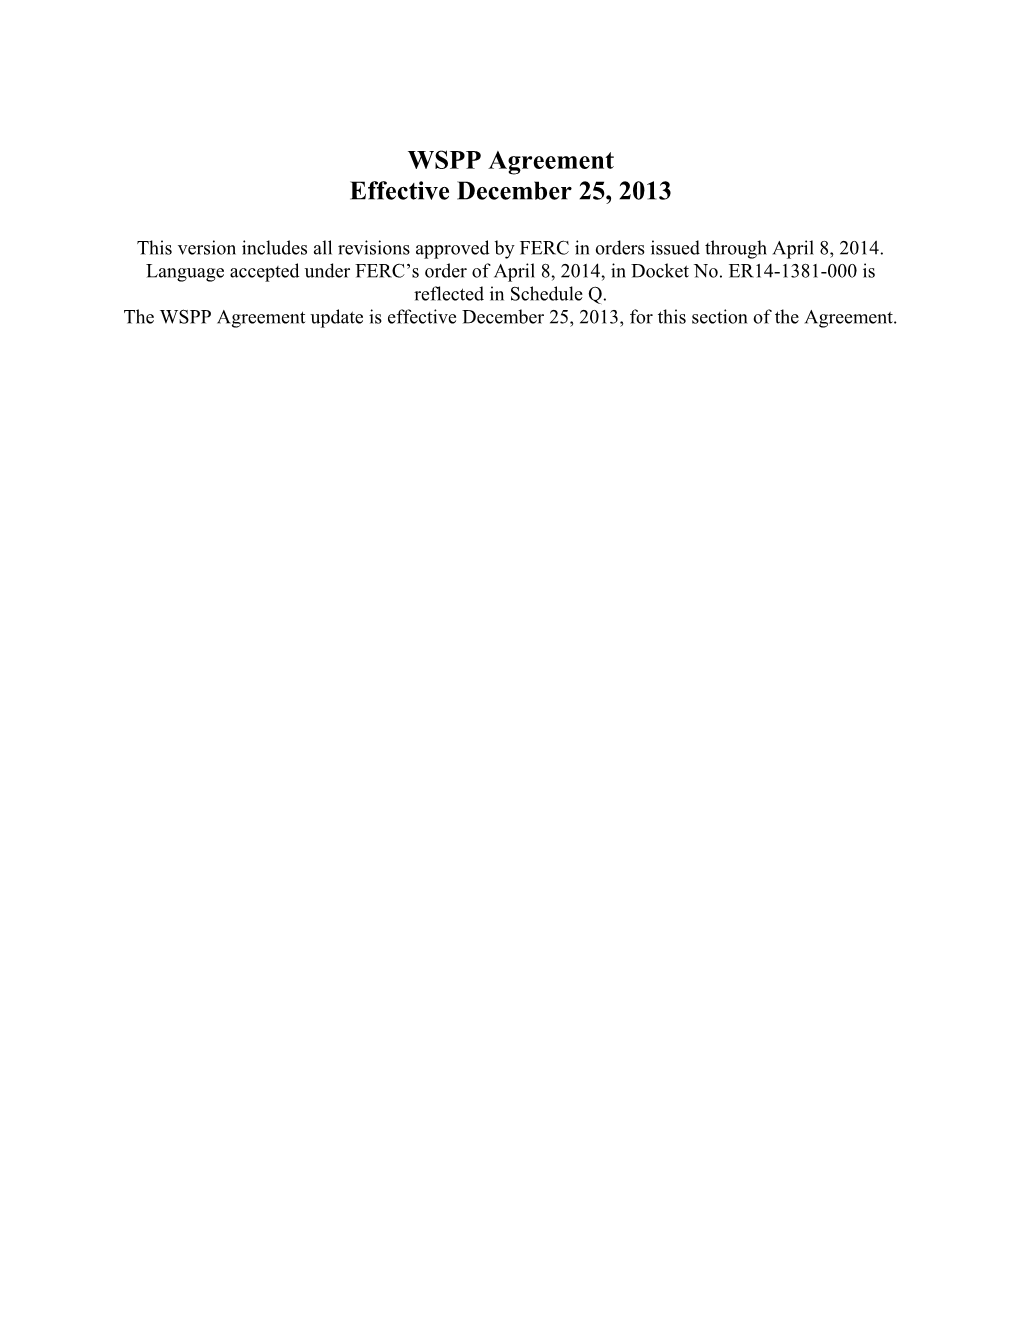 Redline December 25, 2013 WSPP Agreement Updated on 4.8.14 (W0021603;1)